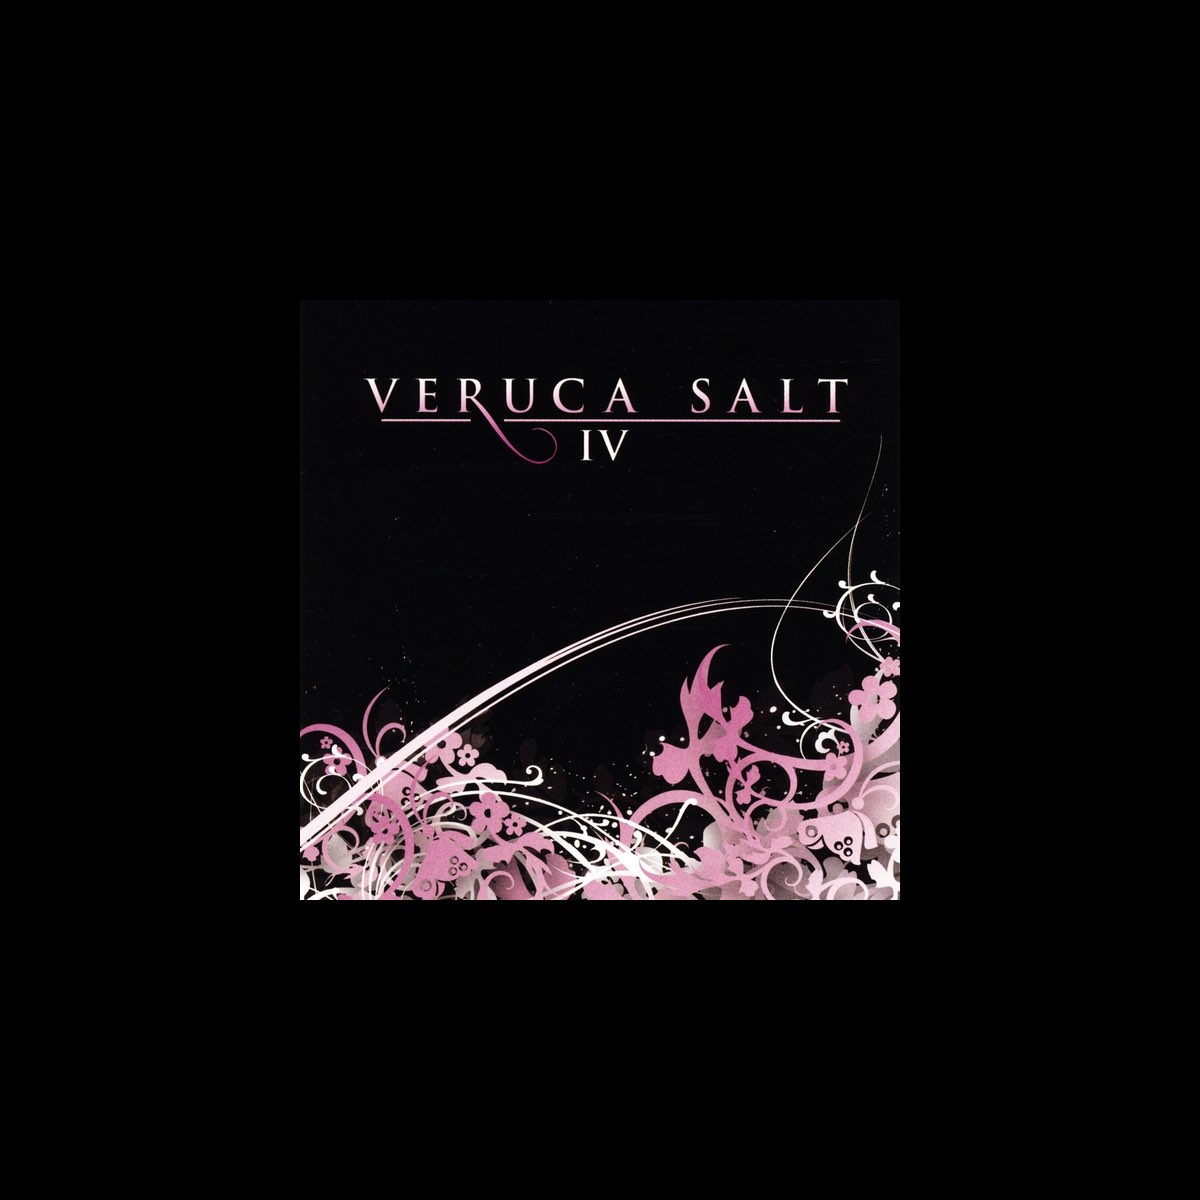 ヴェルーカ ソルトの Veruca Salt Iv をitunesで